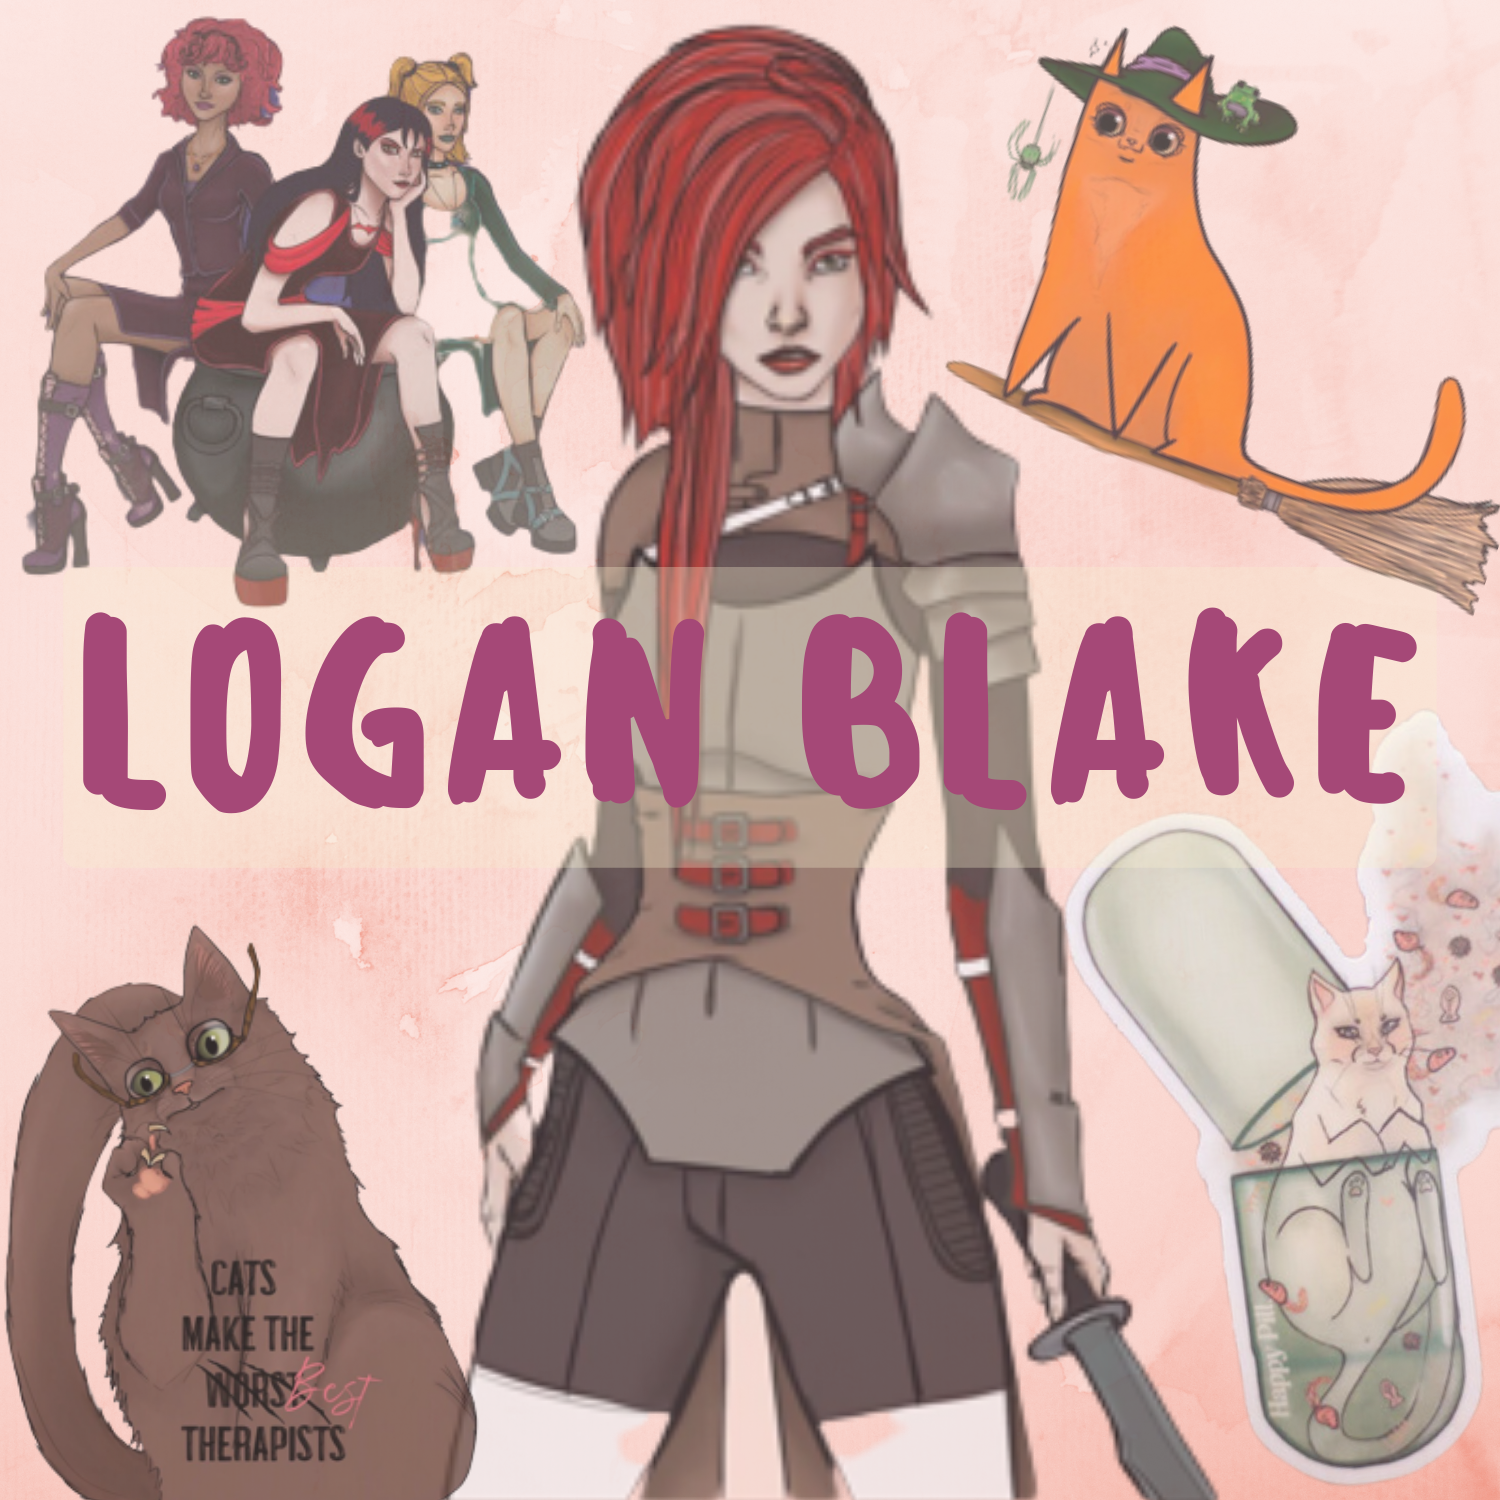 Logan Blake